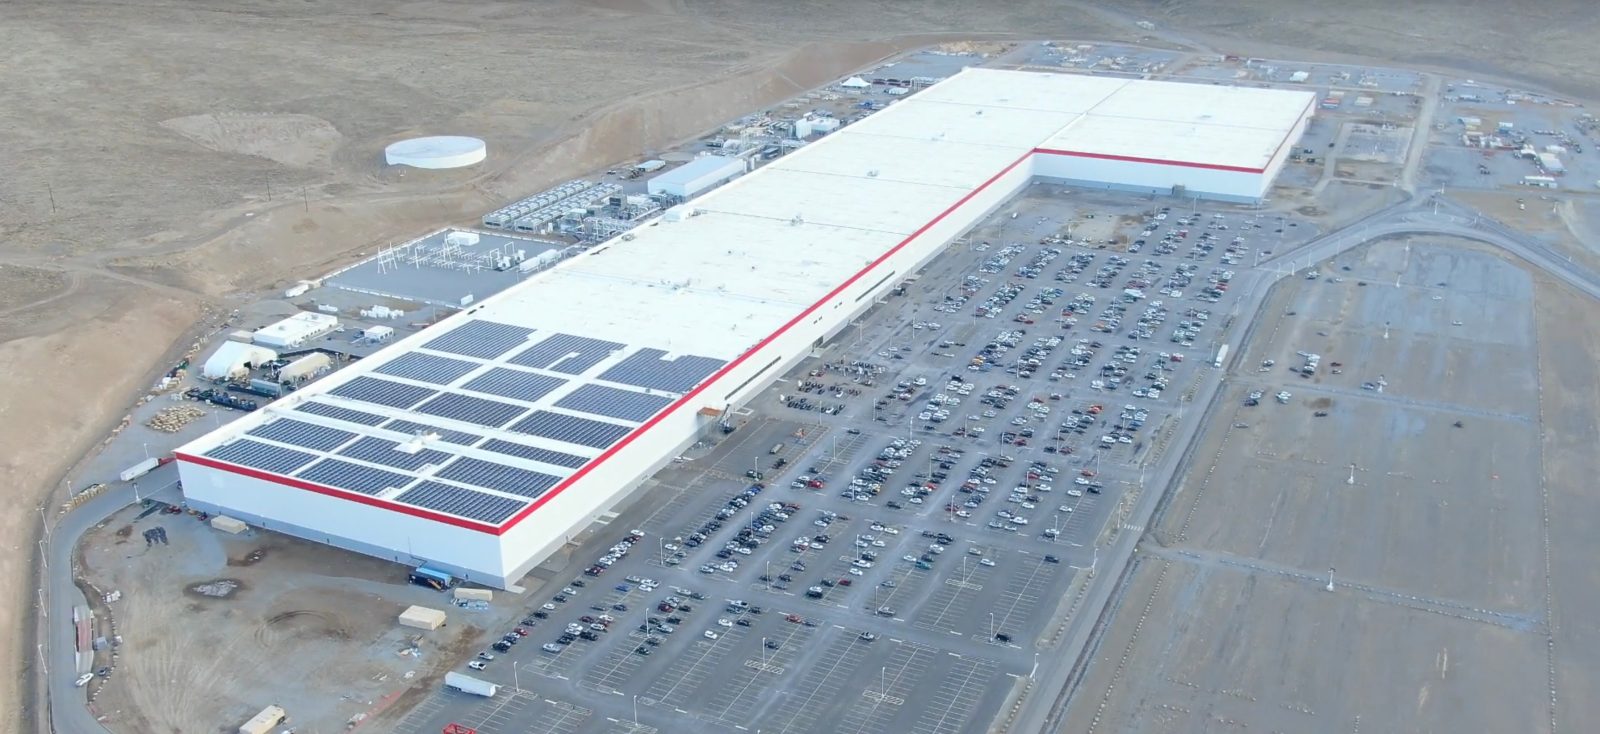 Tesla-Gigafactory-Nevada.jpg?quality=82&strip=all&w=1600